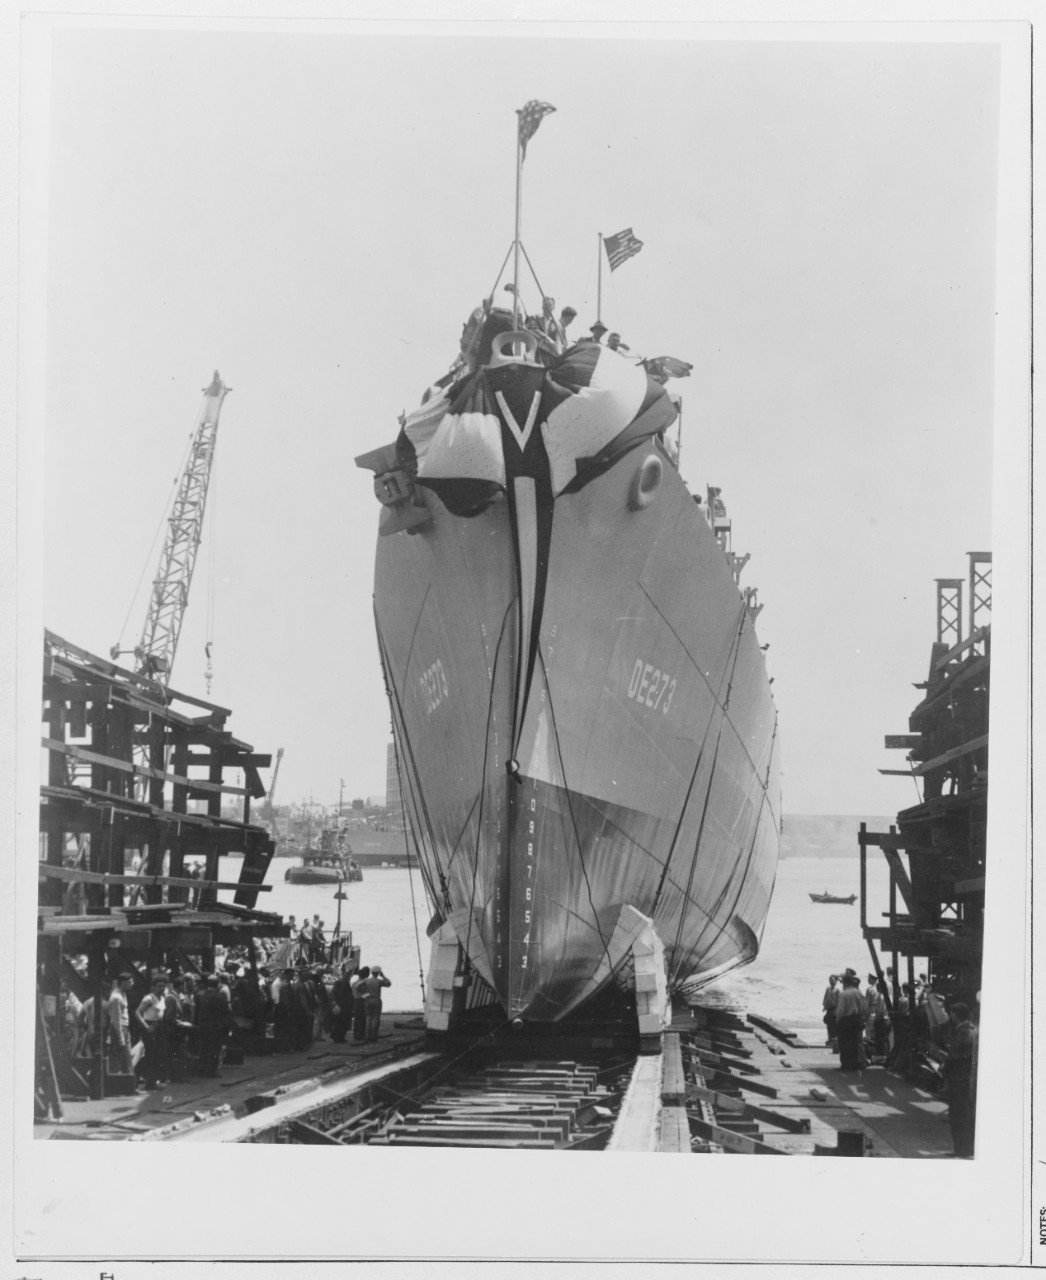 The USS SANDERS (DE 273)